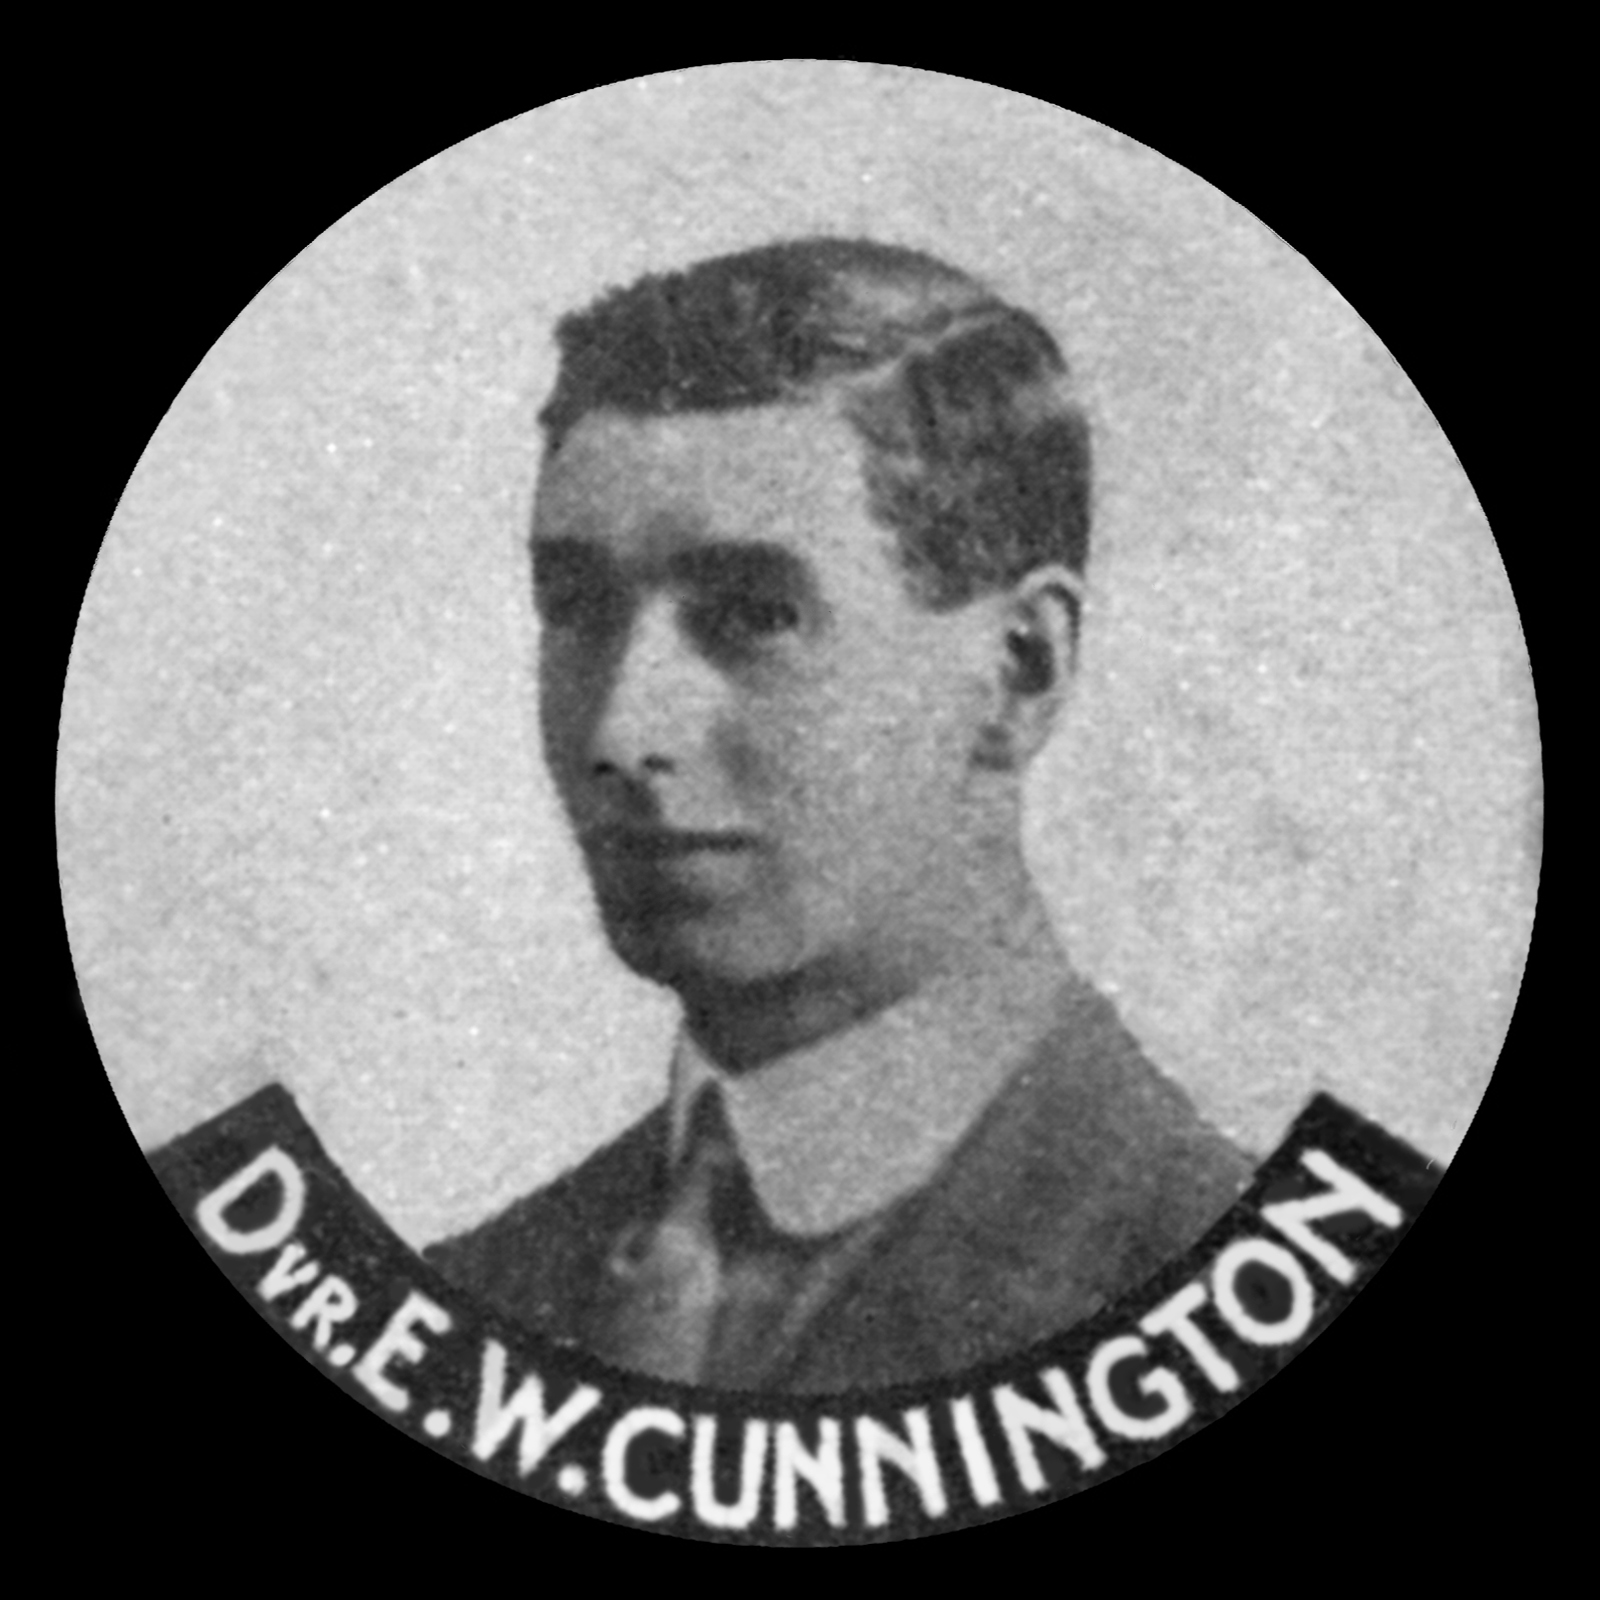 CUNNINGTON Ernest William